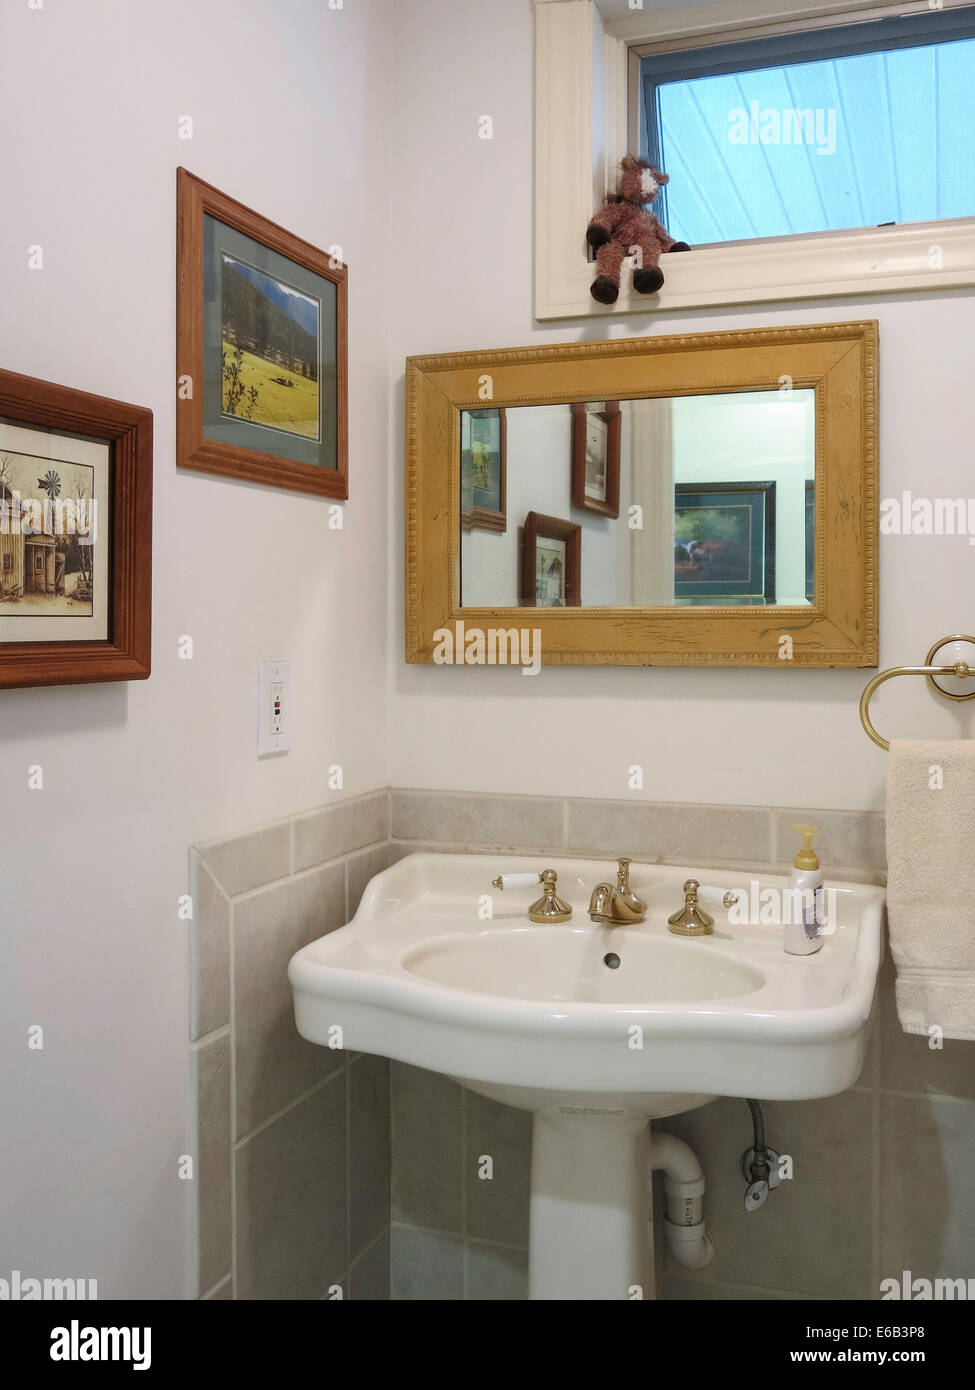 Bagno moderno interno dissipatore di stanza a specchio Foto Stock